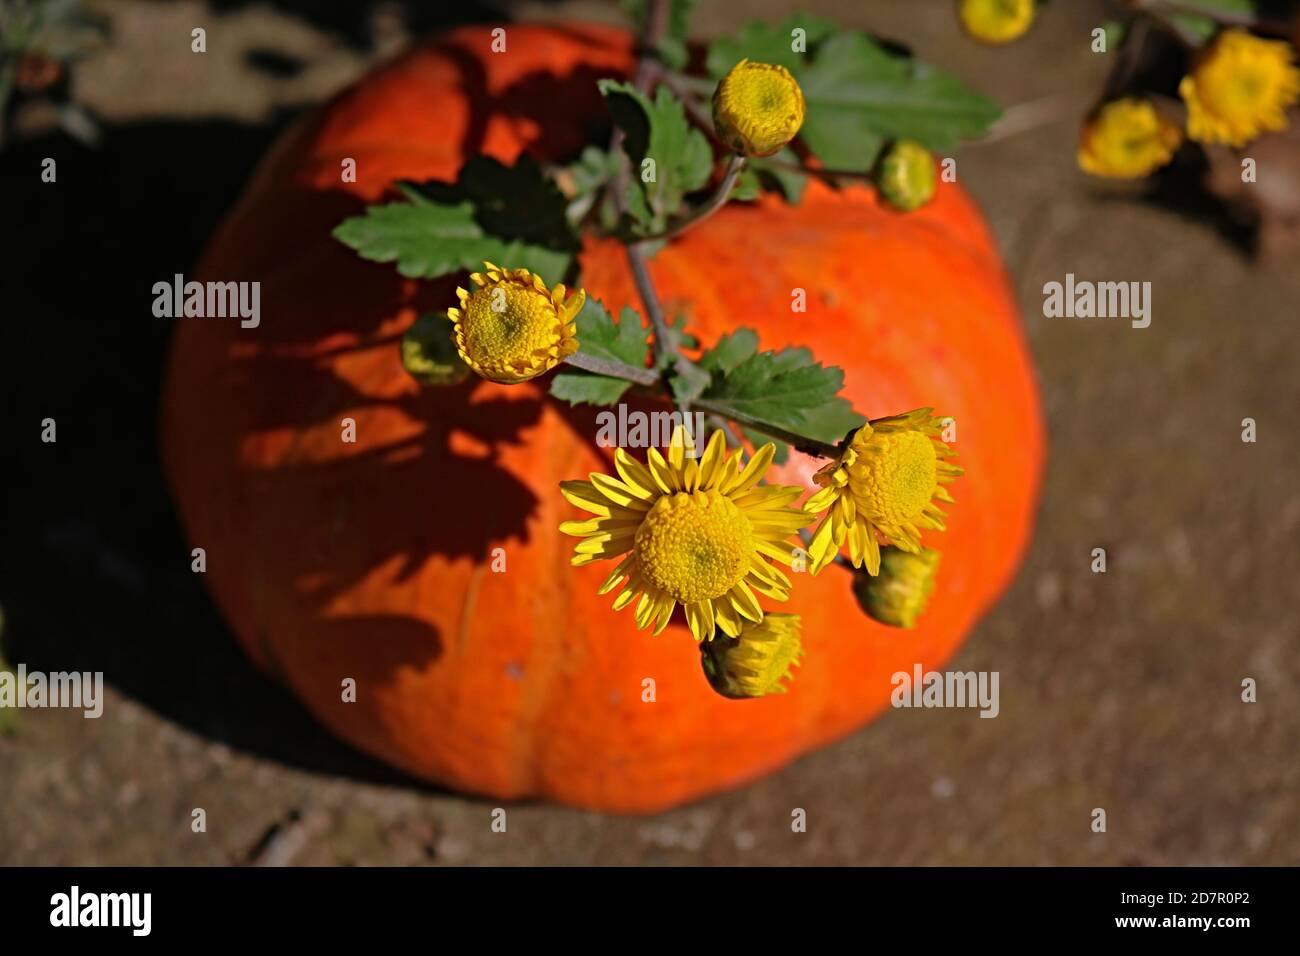 Yellow flowers and orange pumpkin Stock Photo